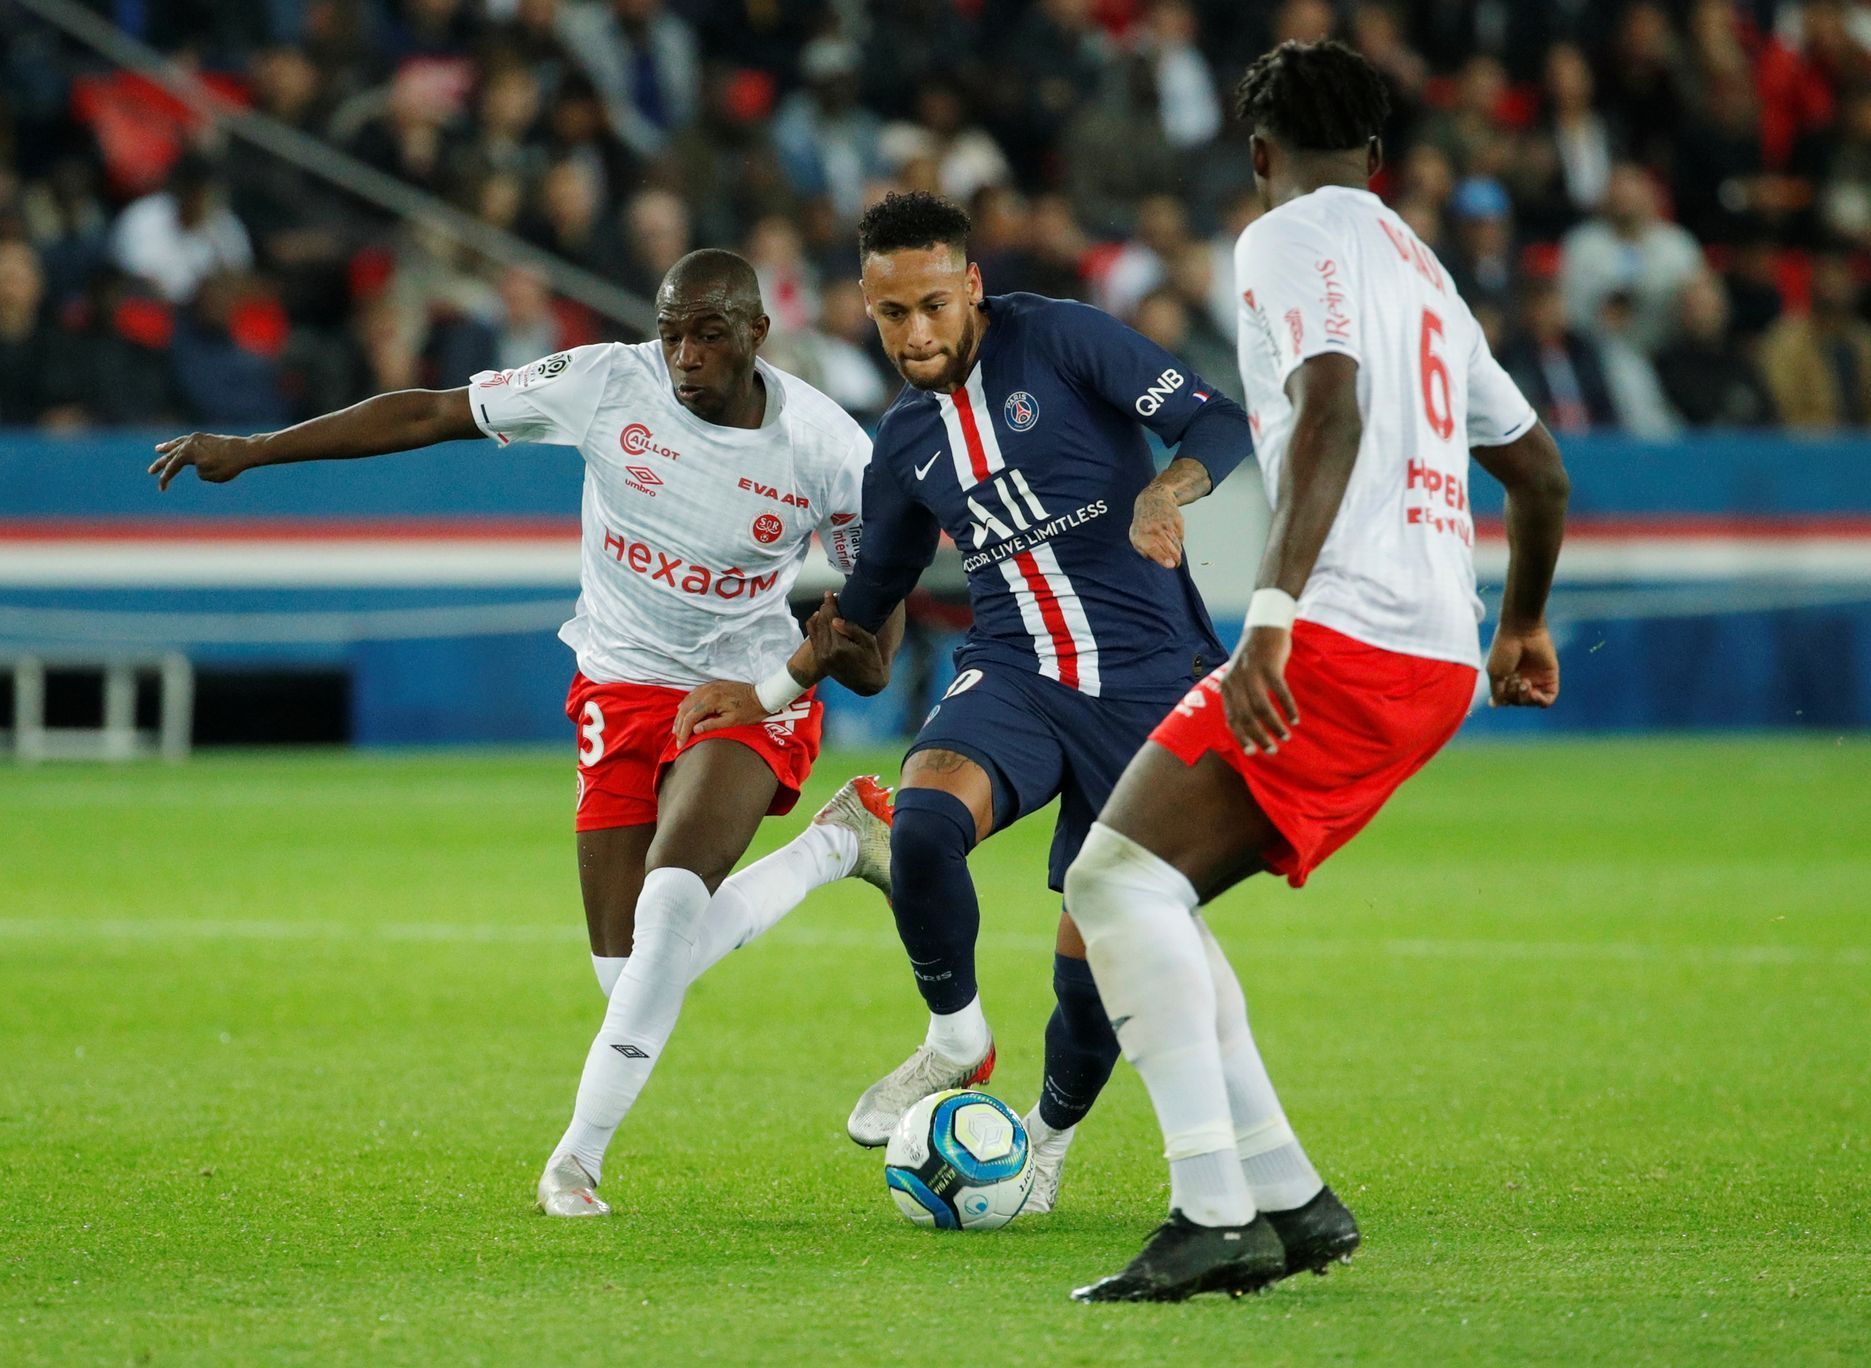 Ligue 1 - Paris St Germain v Stade de Reims